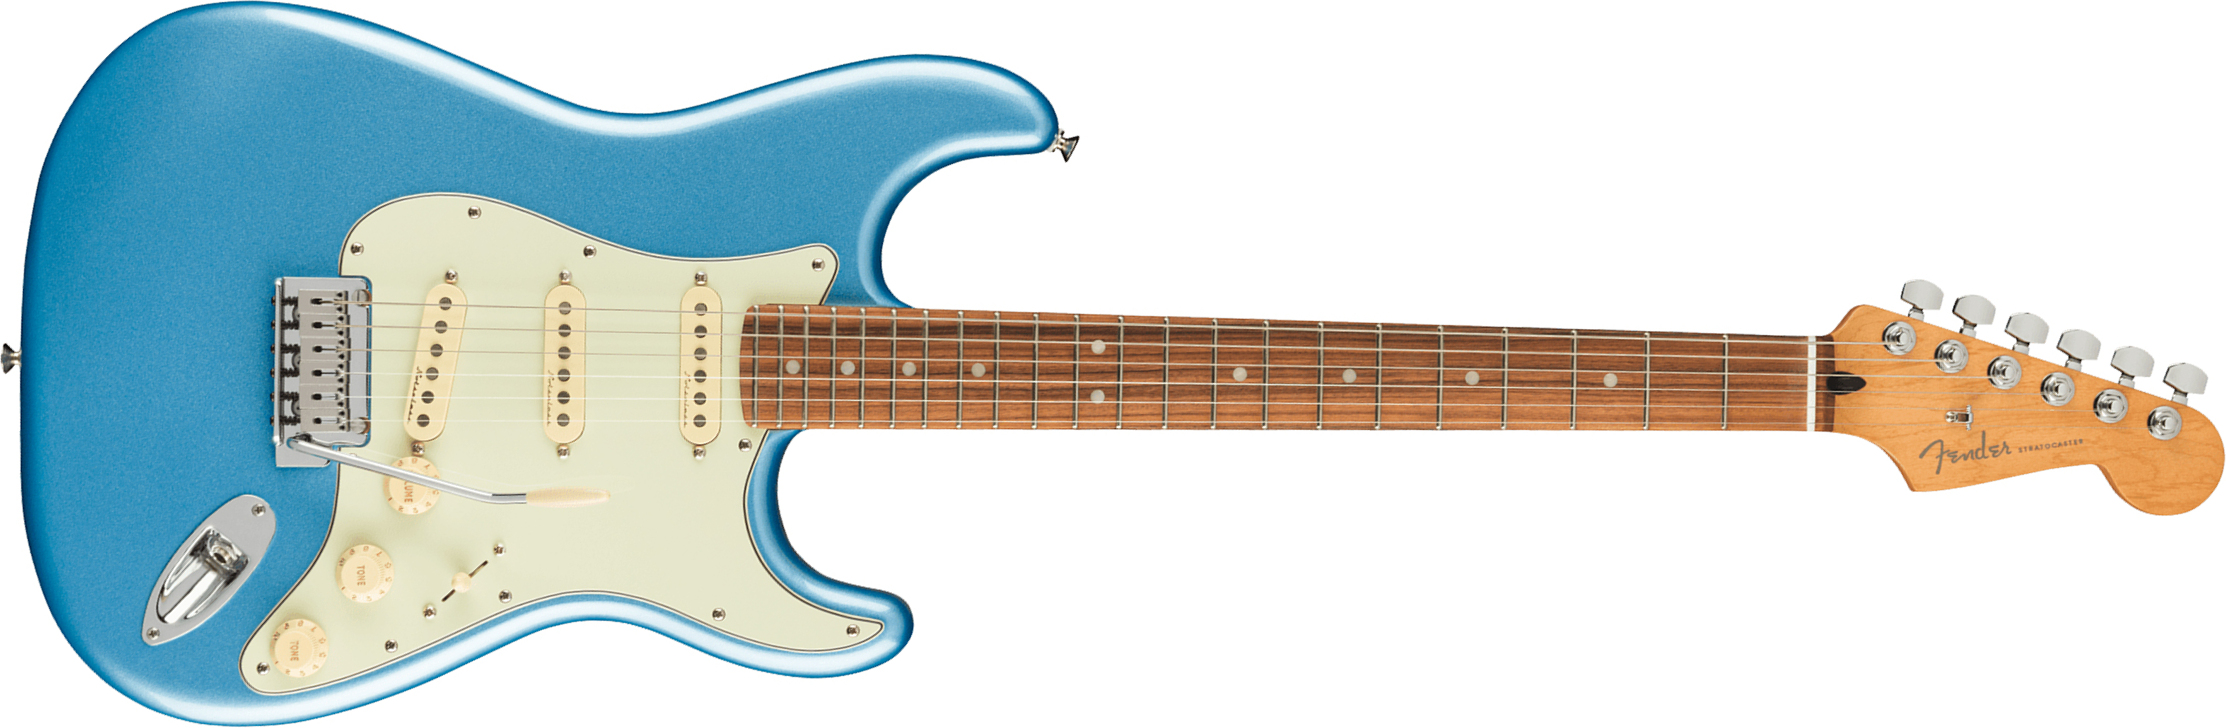 Fender Strat Player Plus Mex 3s Trem Pf - Opal Spark - Guitarra eléctrica con forma de str. - Main picture